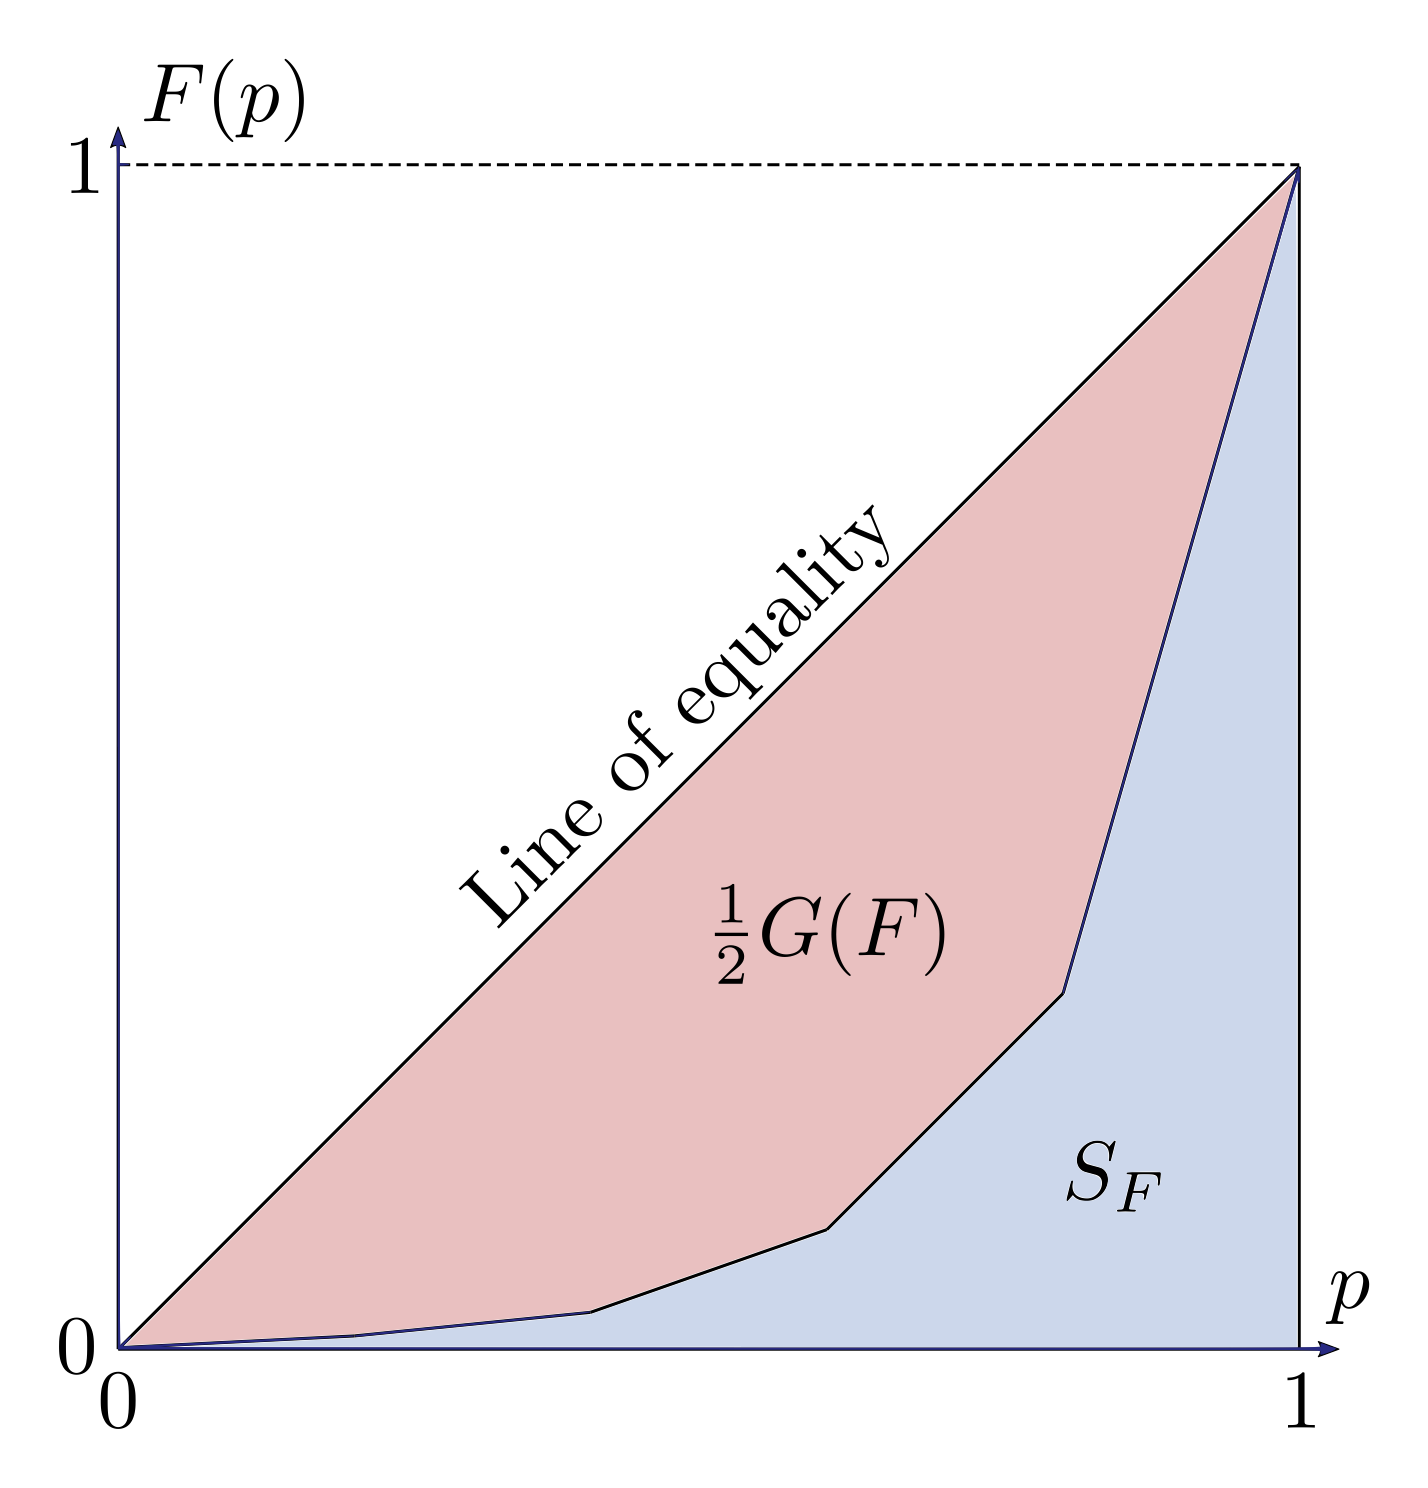 Figure 5.1: Example Lorenz curve